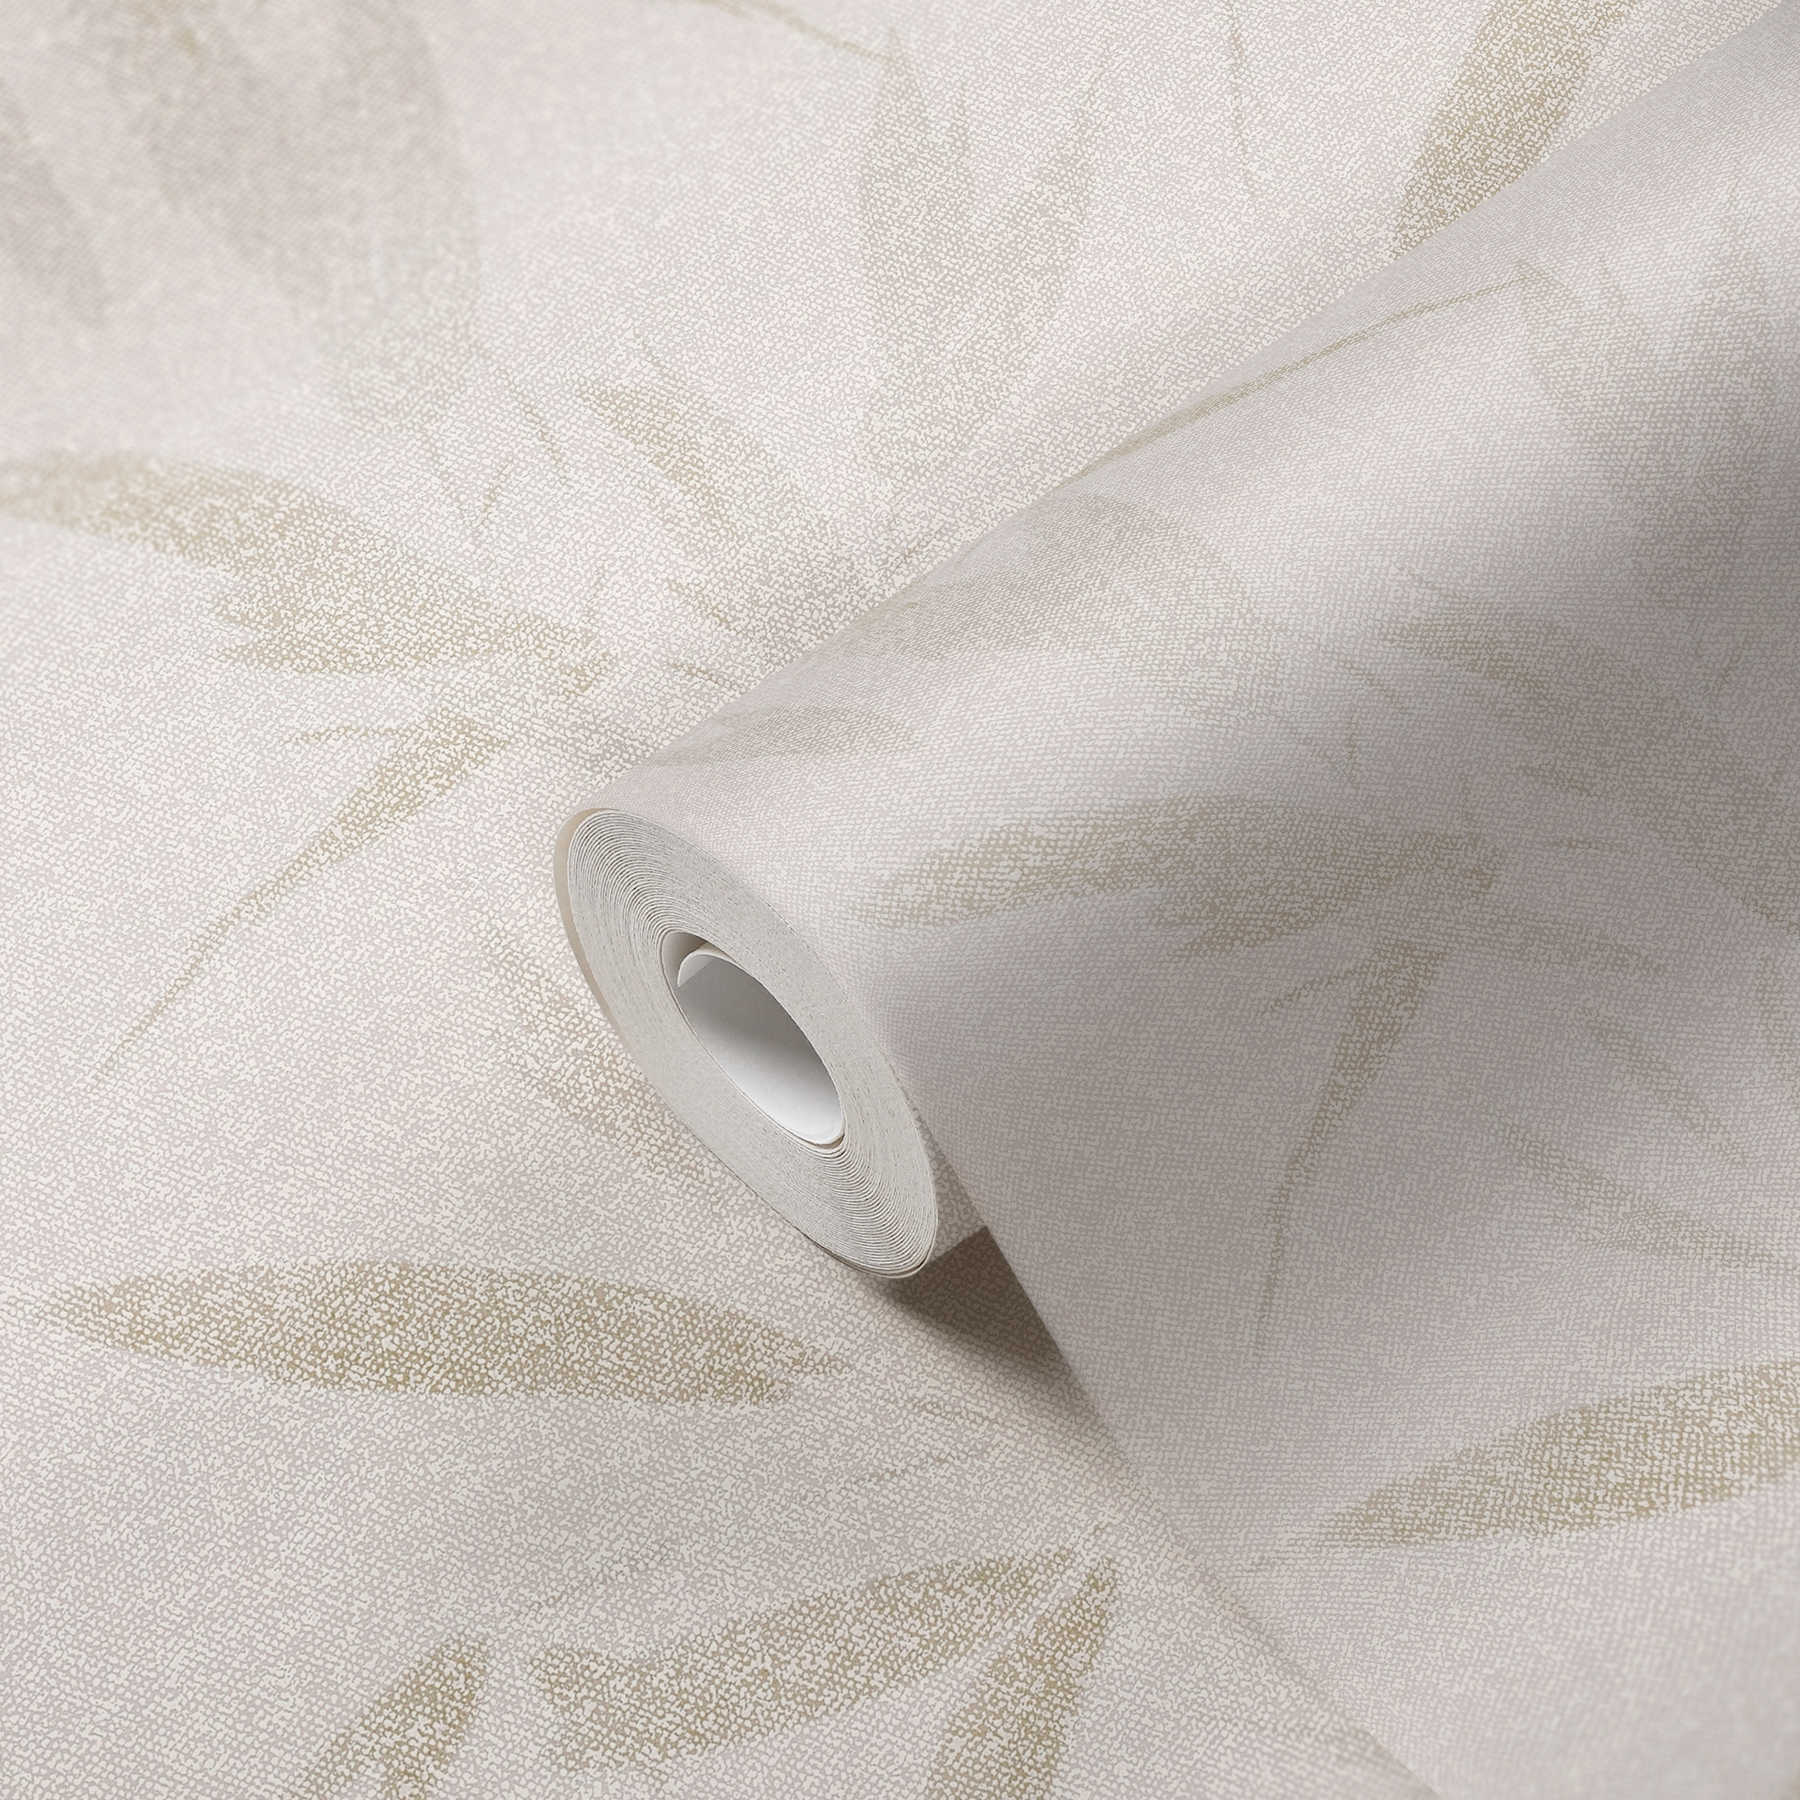             Vliestapete Blättermotiv abstrakt, Textiloptik – Creme, Beige
        